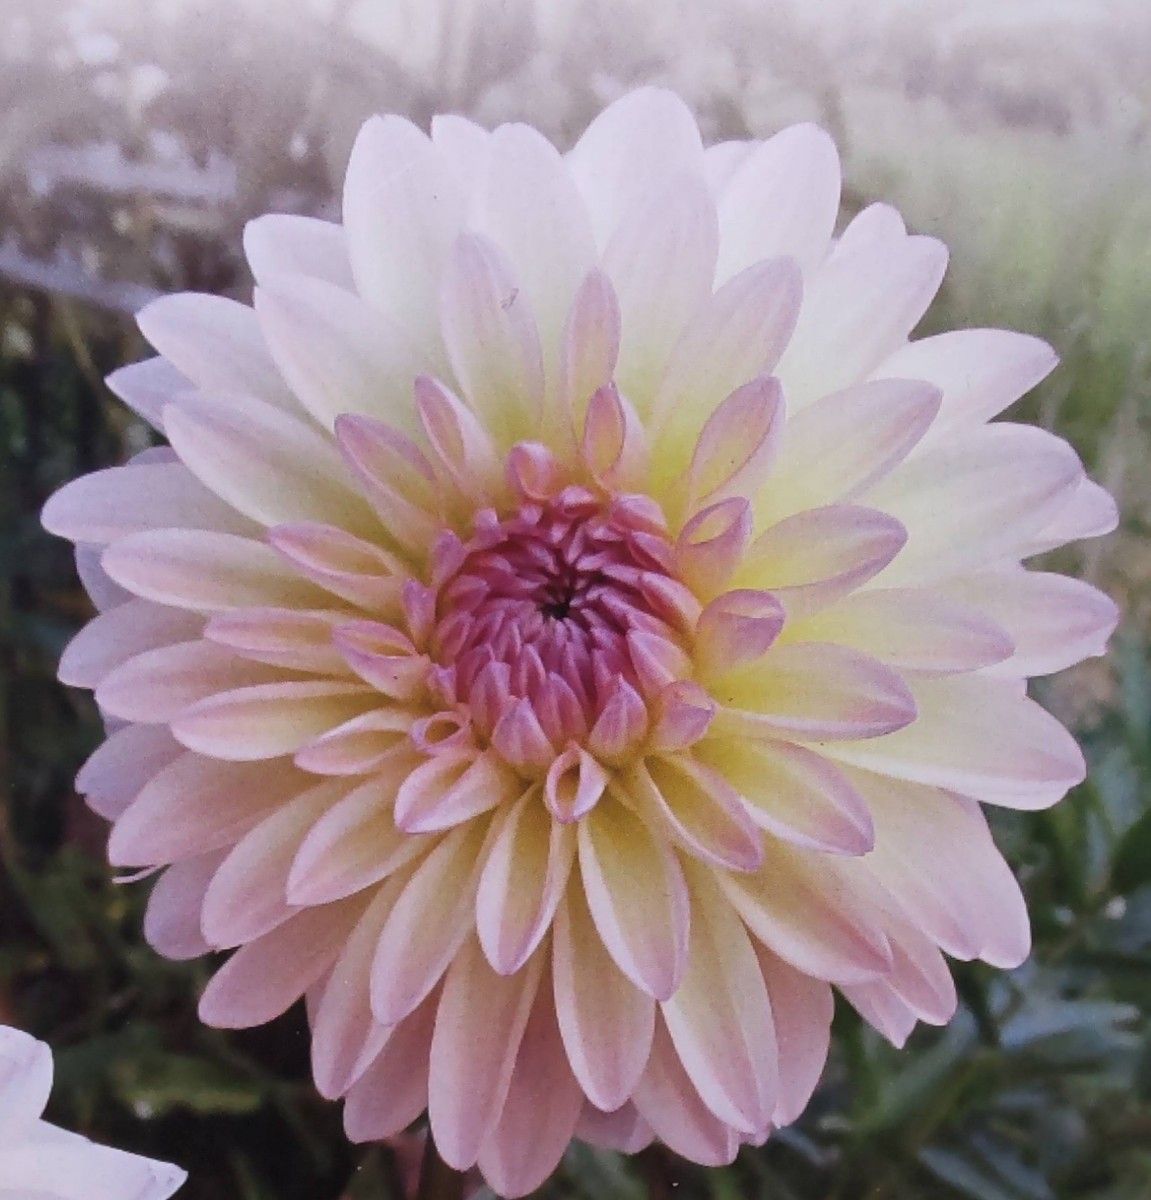 ダリア【小さな恋の物語】グラデーションの美しい優しい雰囲気の花